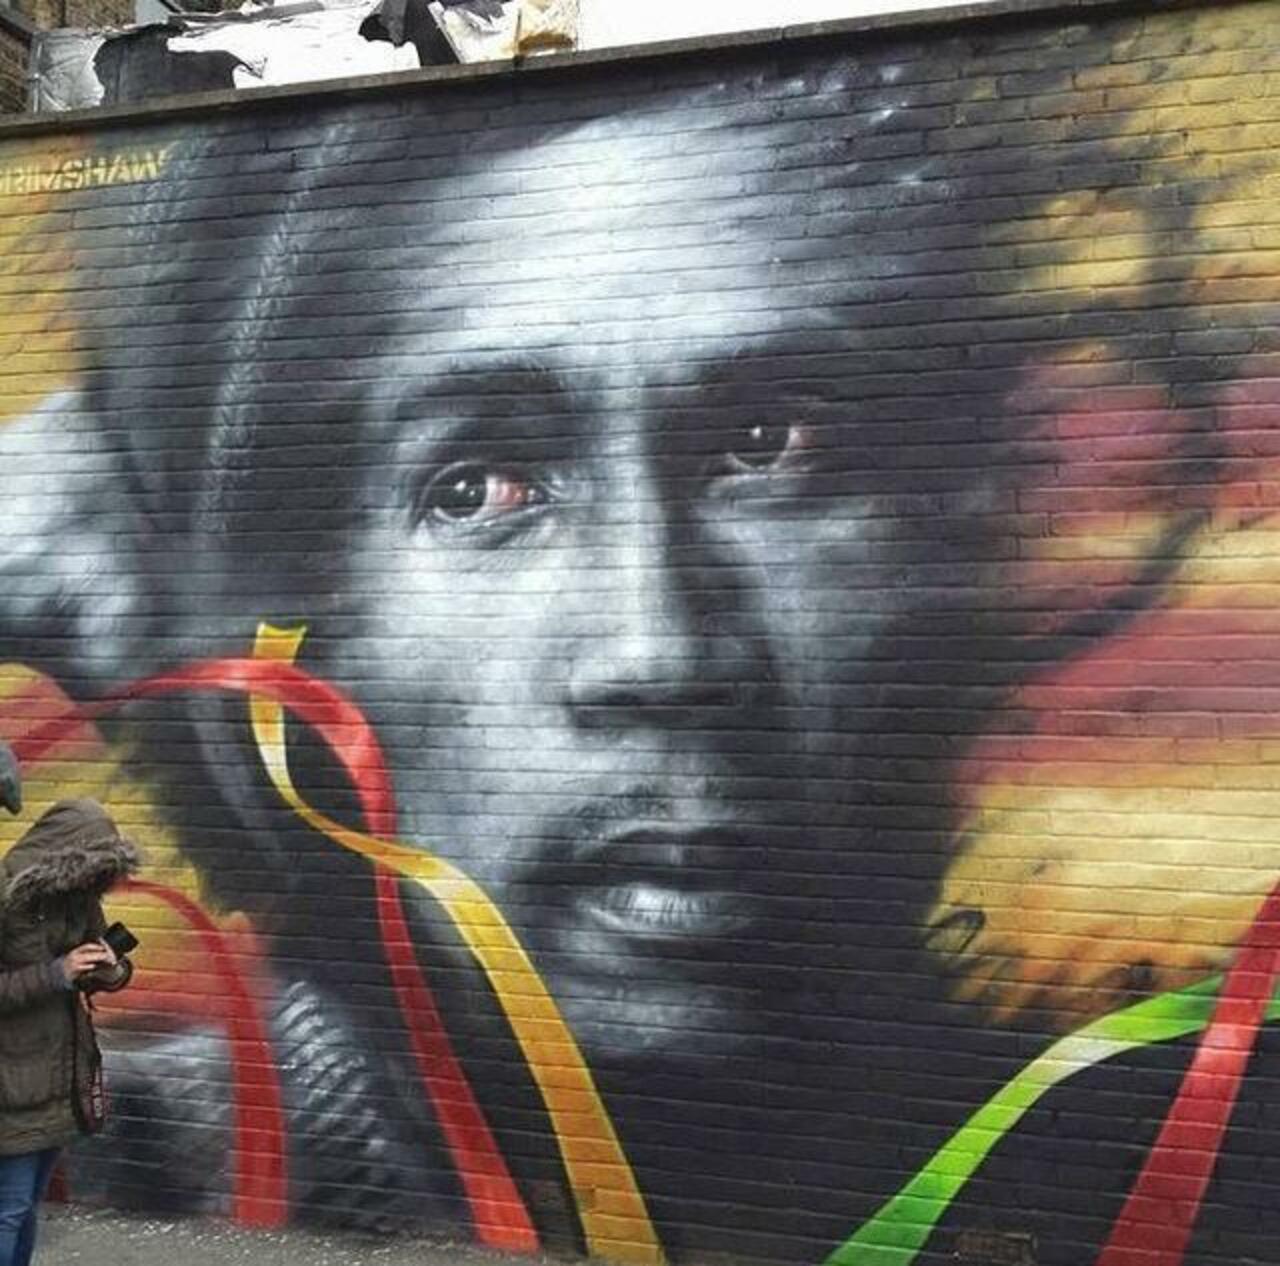 Bob Marley Street Art portrait by Dale Grimshaw in London 

#art #arte #graffiti #streetart http://t.co/pLjTD6fMU1